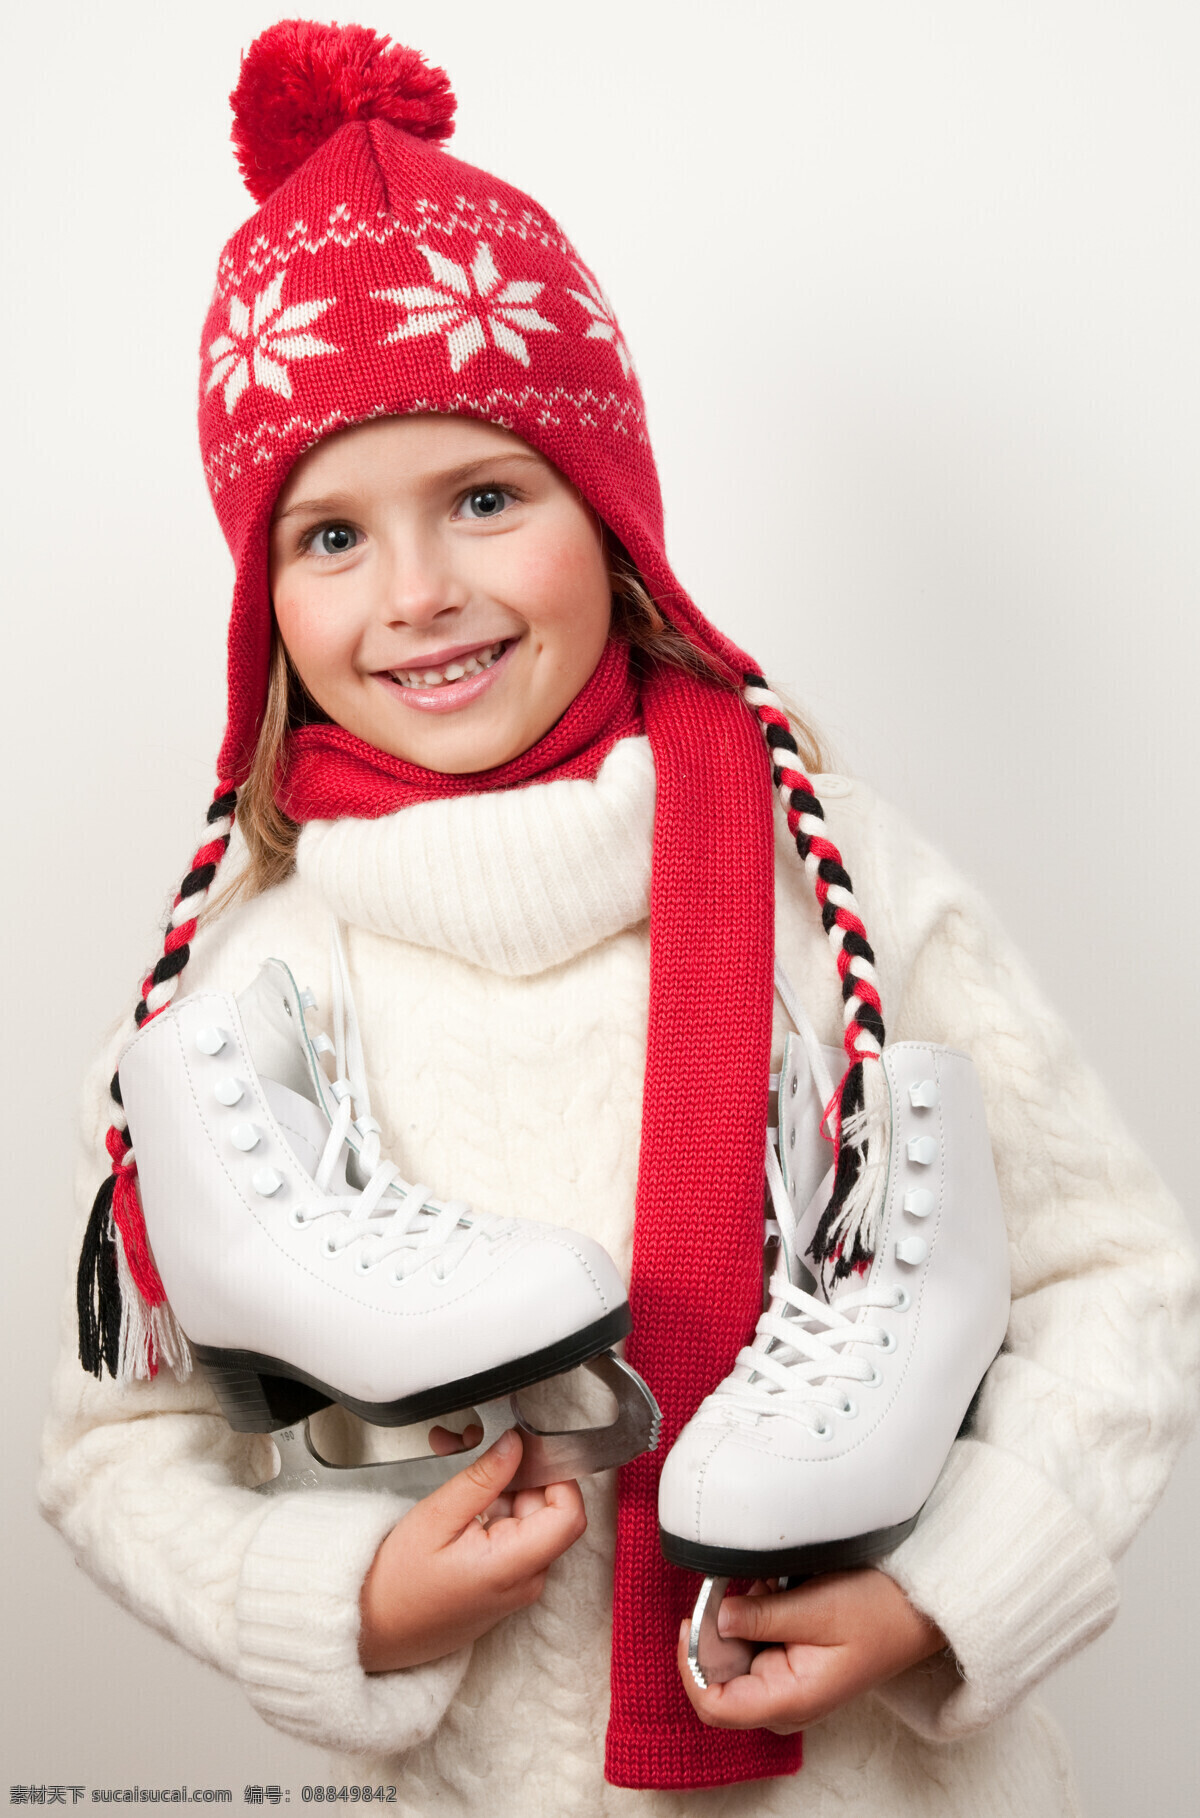 国外 女孩 儿童 滑冰鞋 人物 人物摄影 生活人物 人物图片